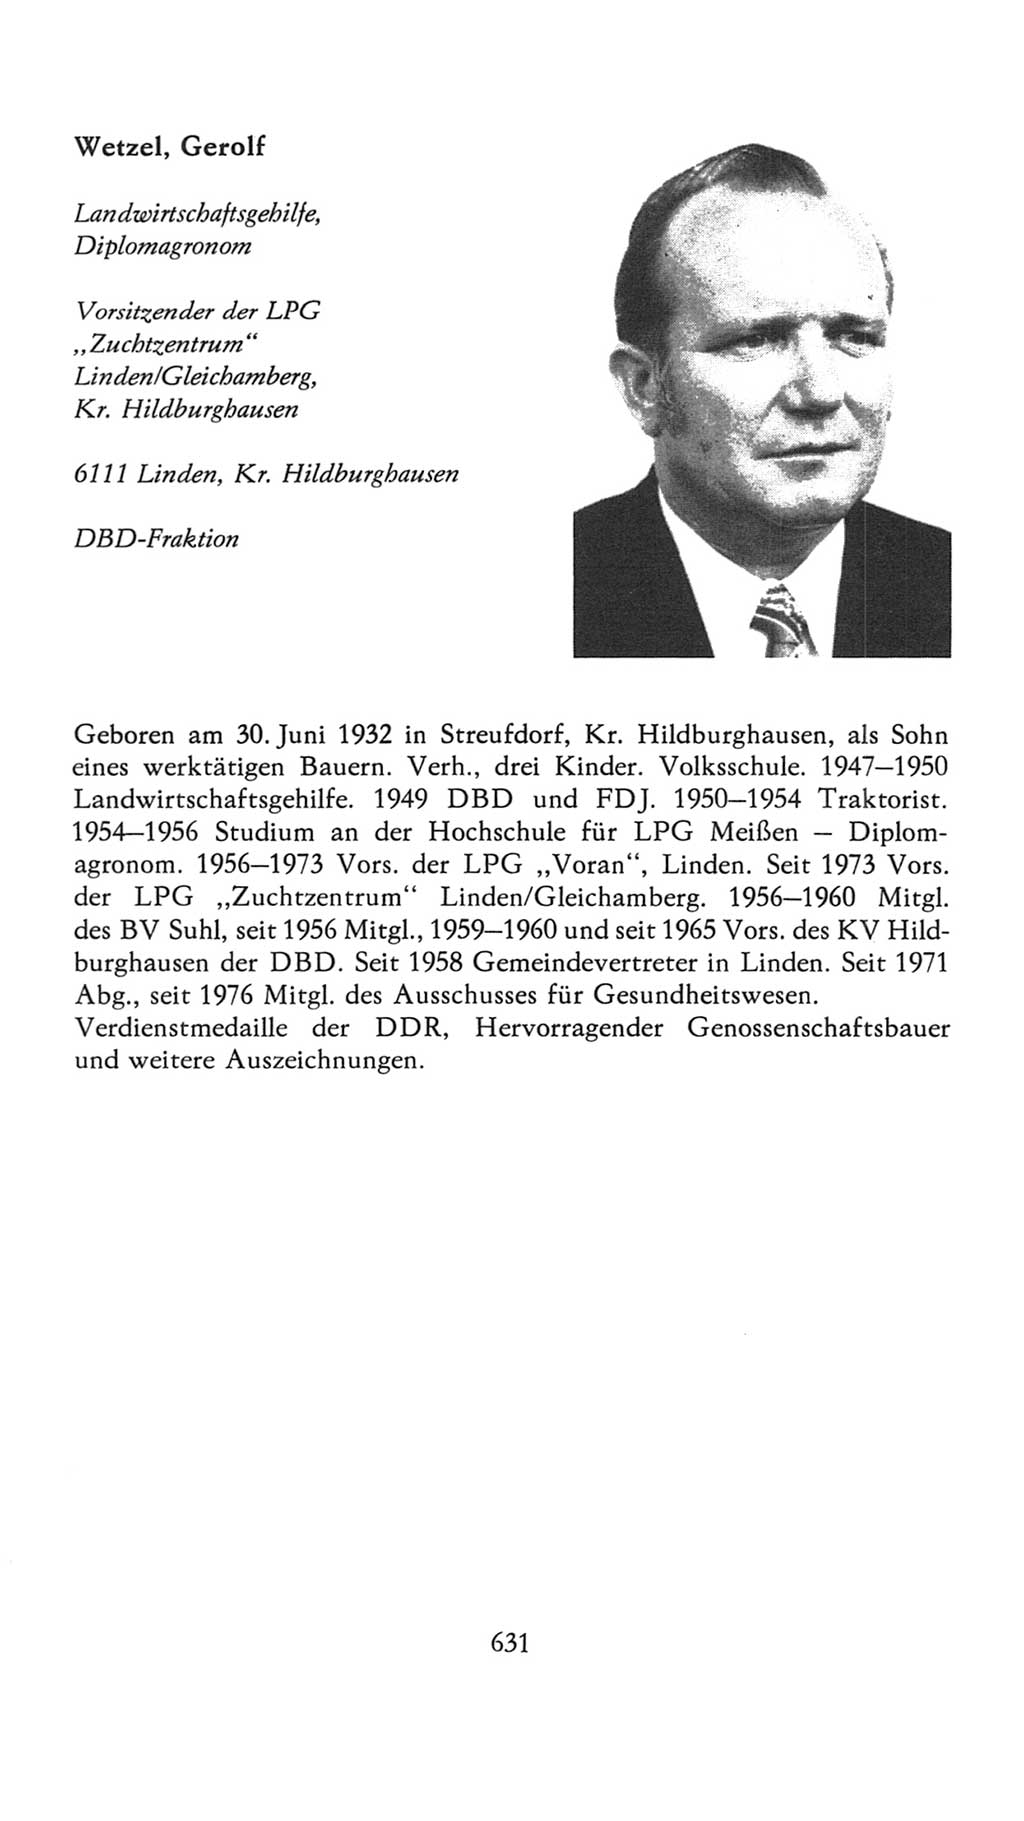 Volkskammer (VK) der Deutschen Demokratischen Republik (DDR), 7. Wahlperiode 1976-1981, Seite 631 (VK. DDR 7. WP. 1976-1981, S. 631)